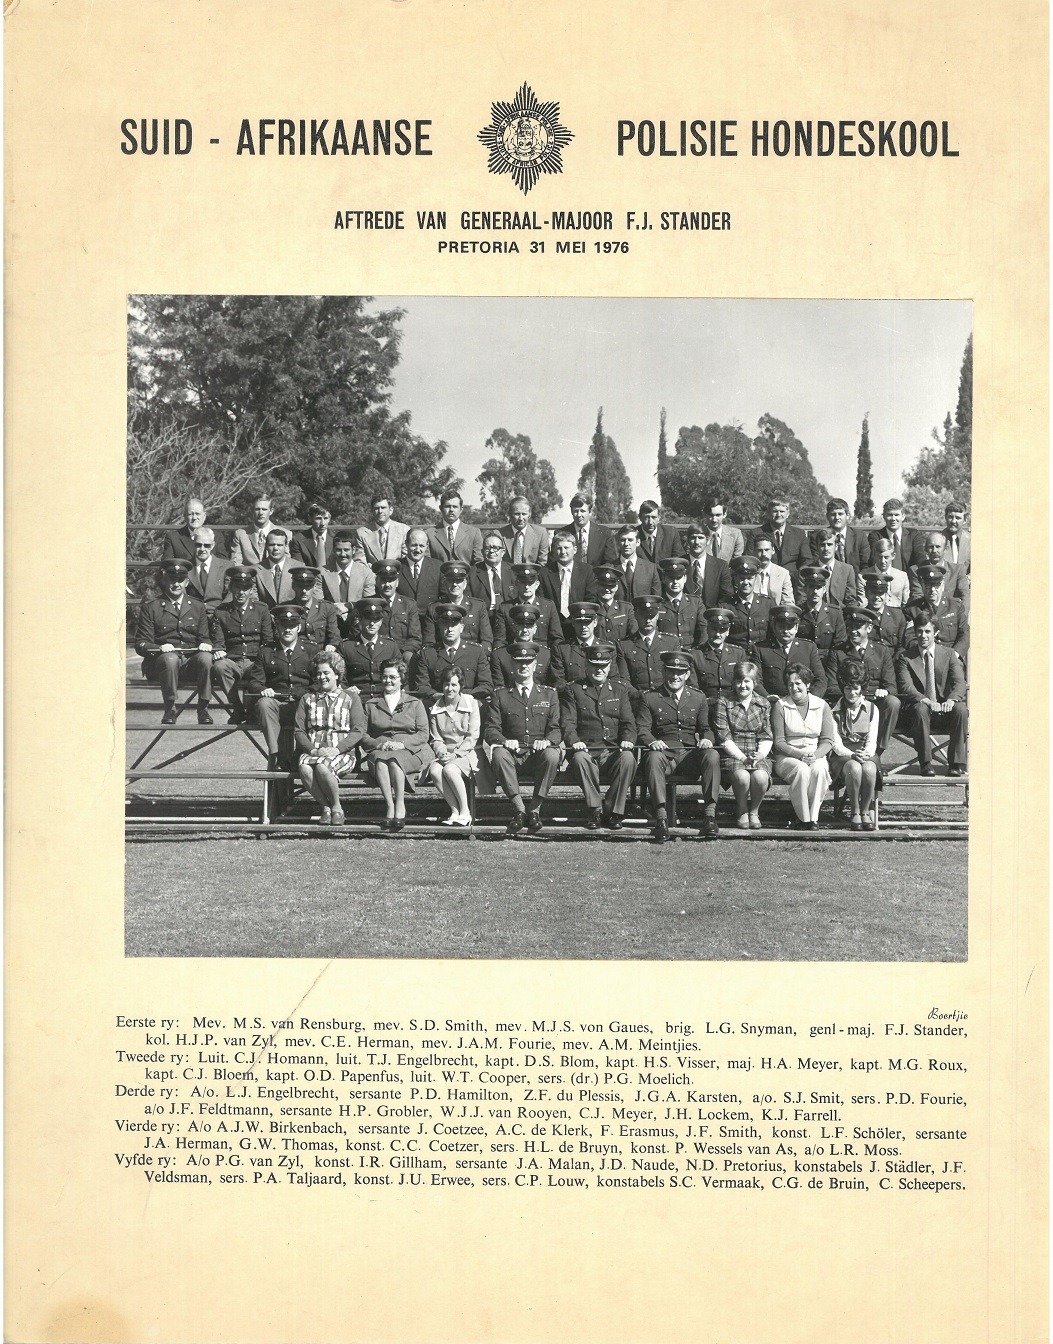 1976 SAP Hondeskool personeel Dog school personnel